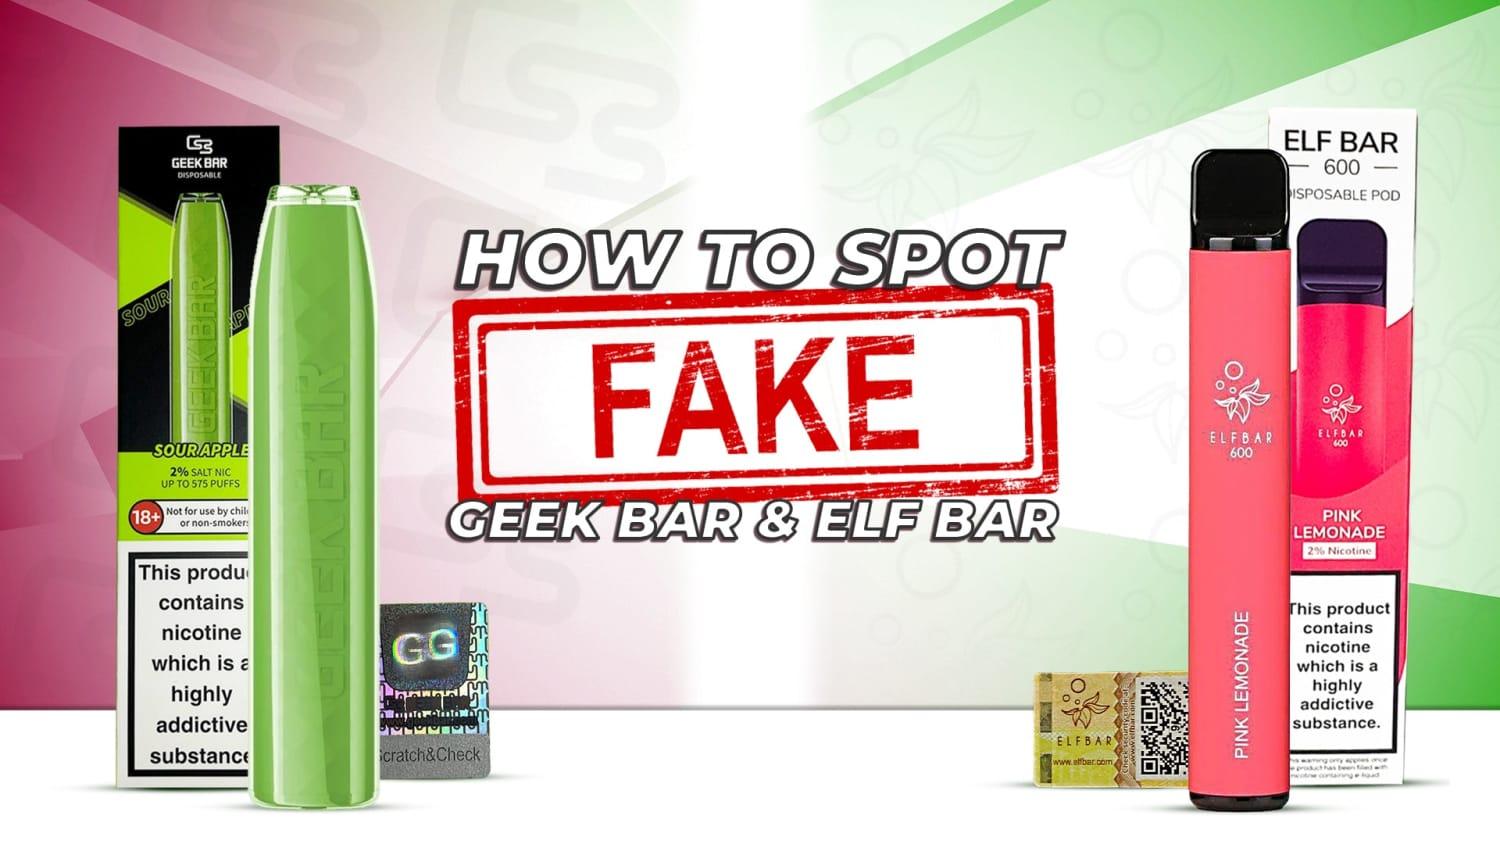 How to Spot Fake Geek Bar & Elf bar